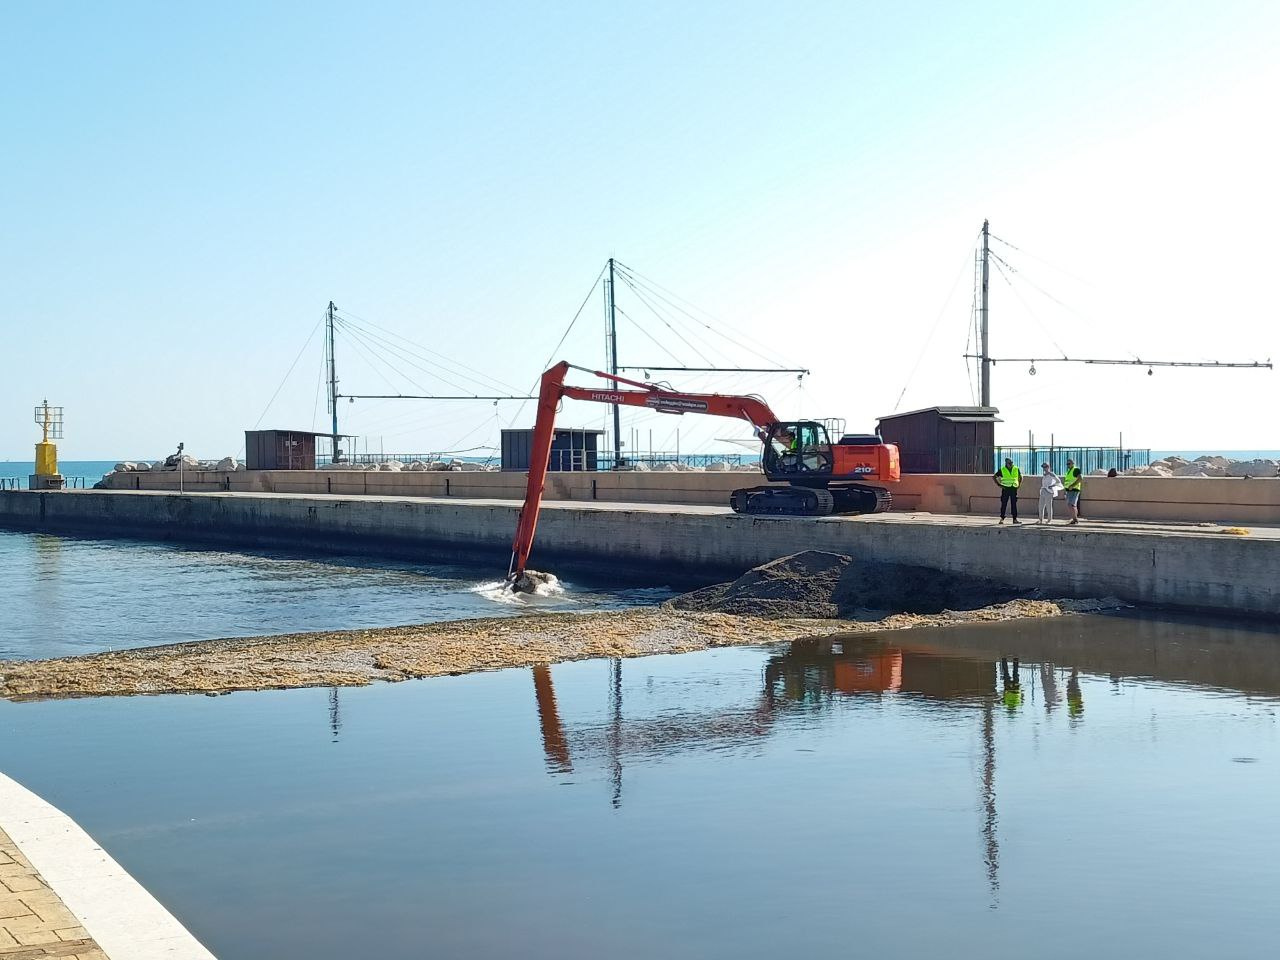 I lavori per aprire un varco nella diga naturale di ghiaia e detriti formatasi alla foce del fiume Misa a Senigallia